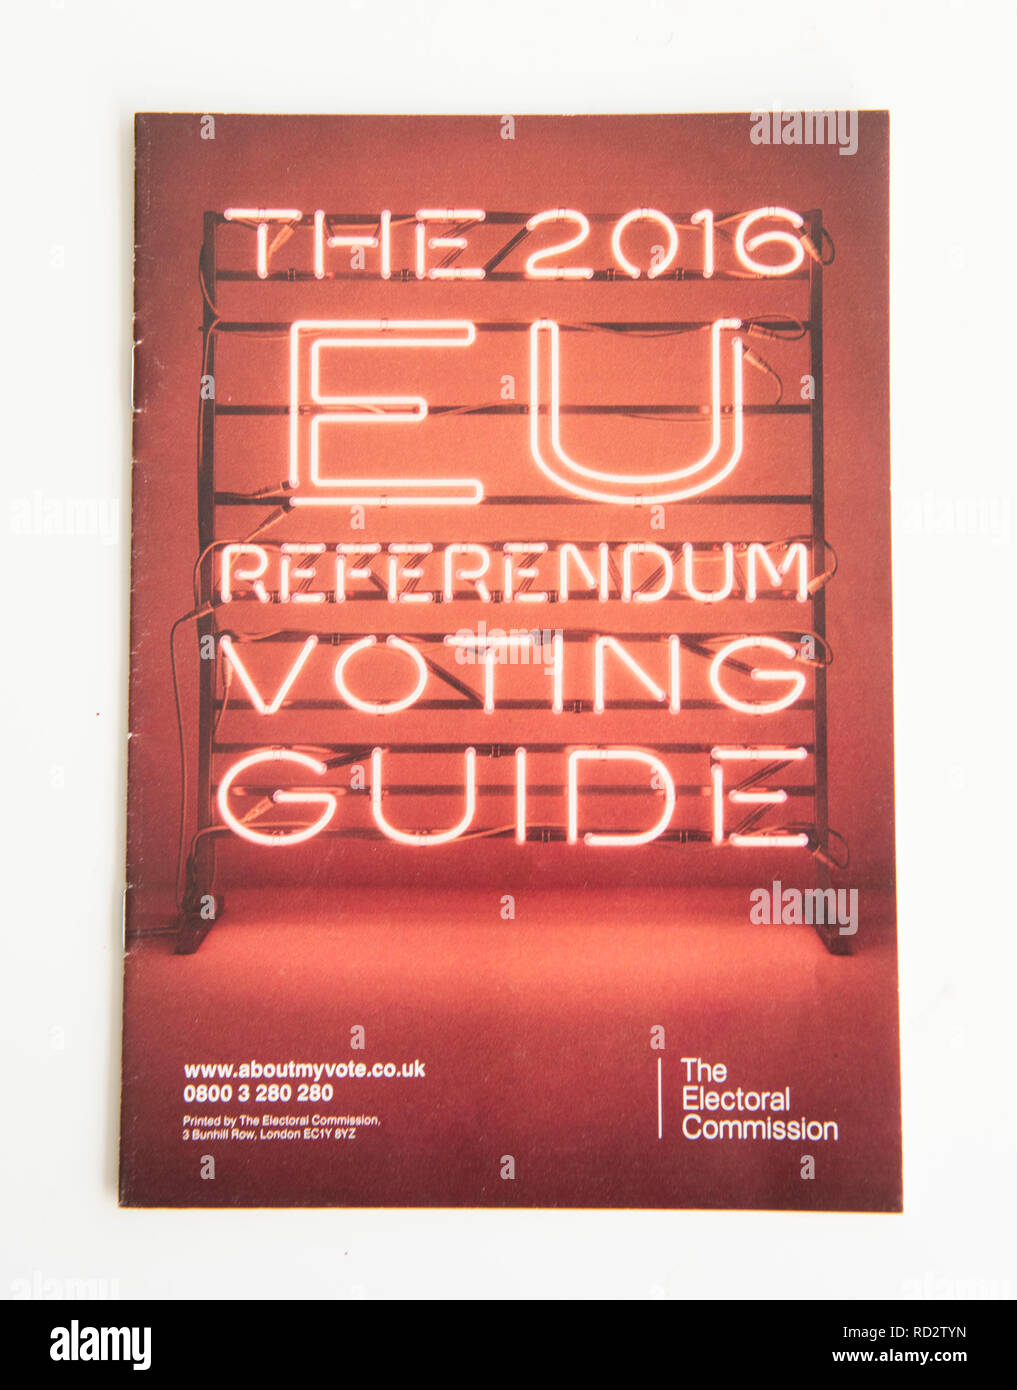 EU Referendum 2016 folletos producidos por el Gobierno británico y la Comisión Electoral antes de la votación Brexit el 23 de junio de 2016. Foto de stock